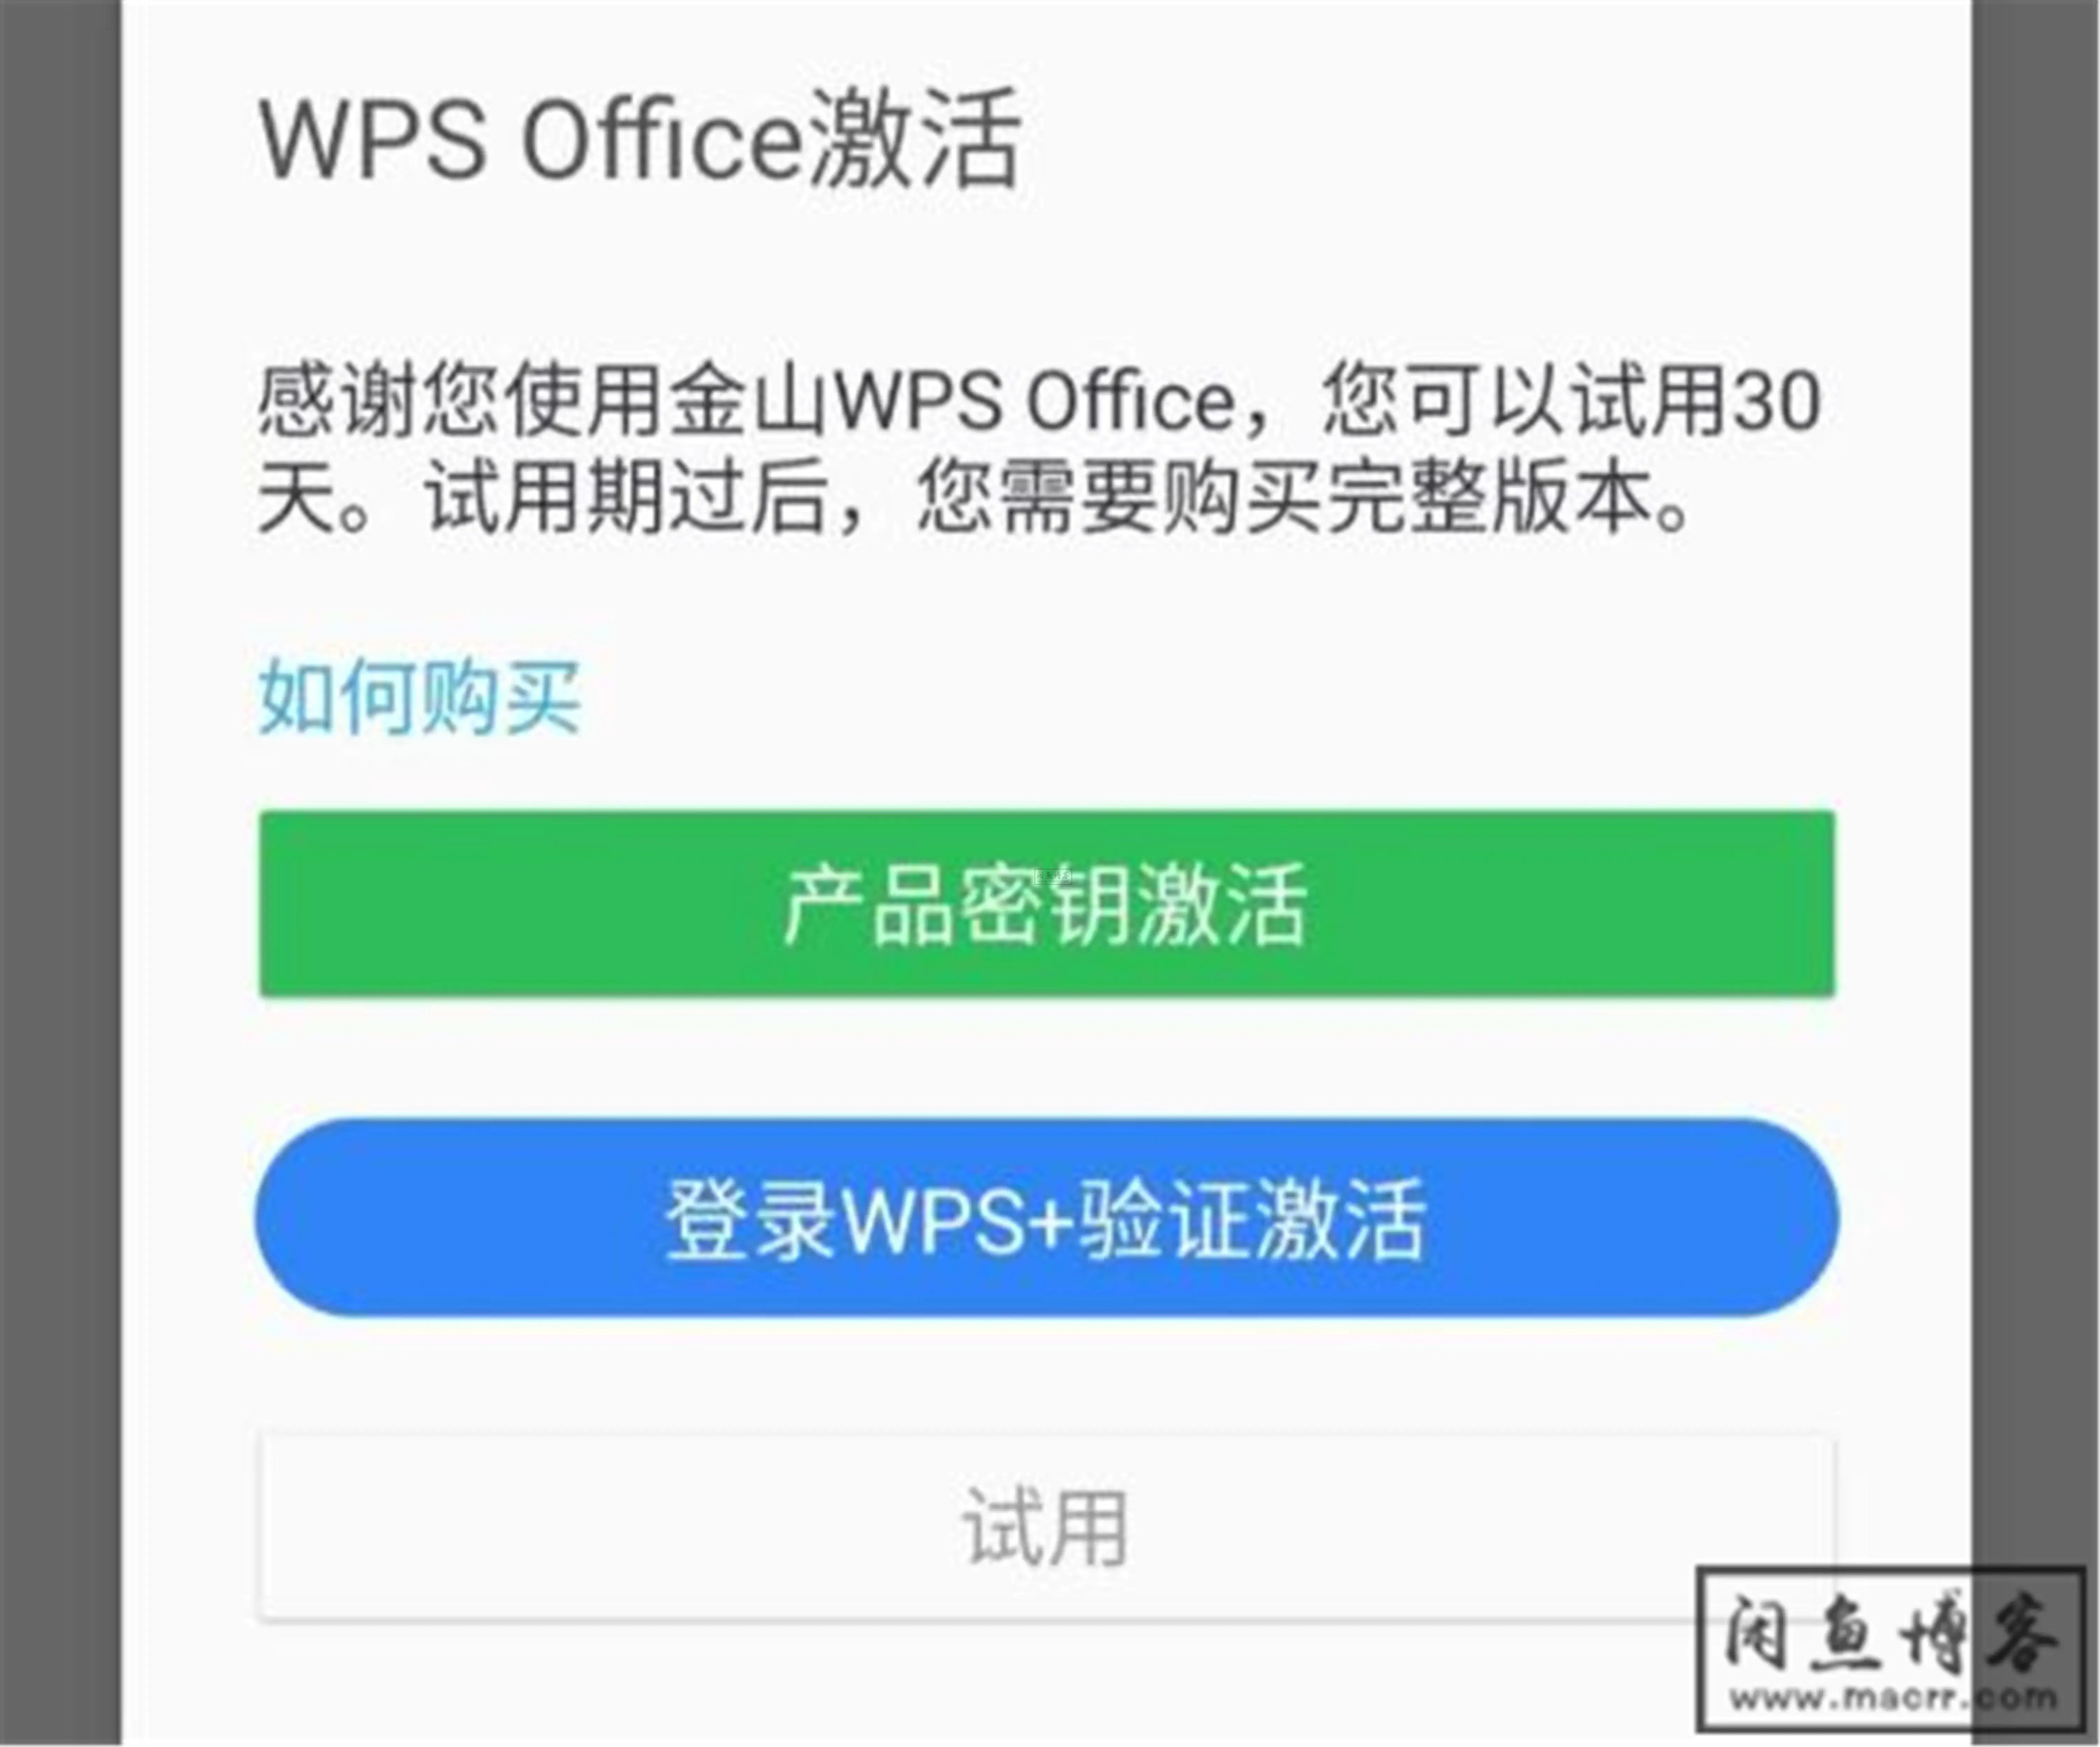 WPS专业版，永久激活码，所有功能免费使用